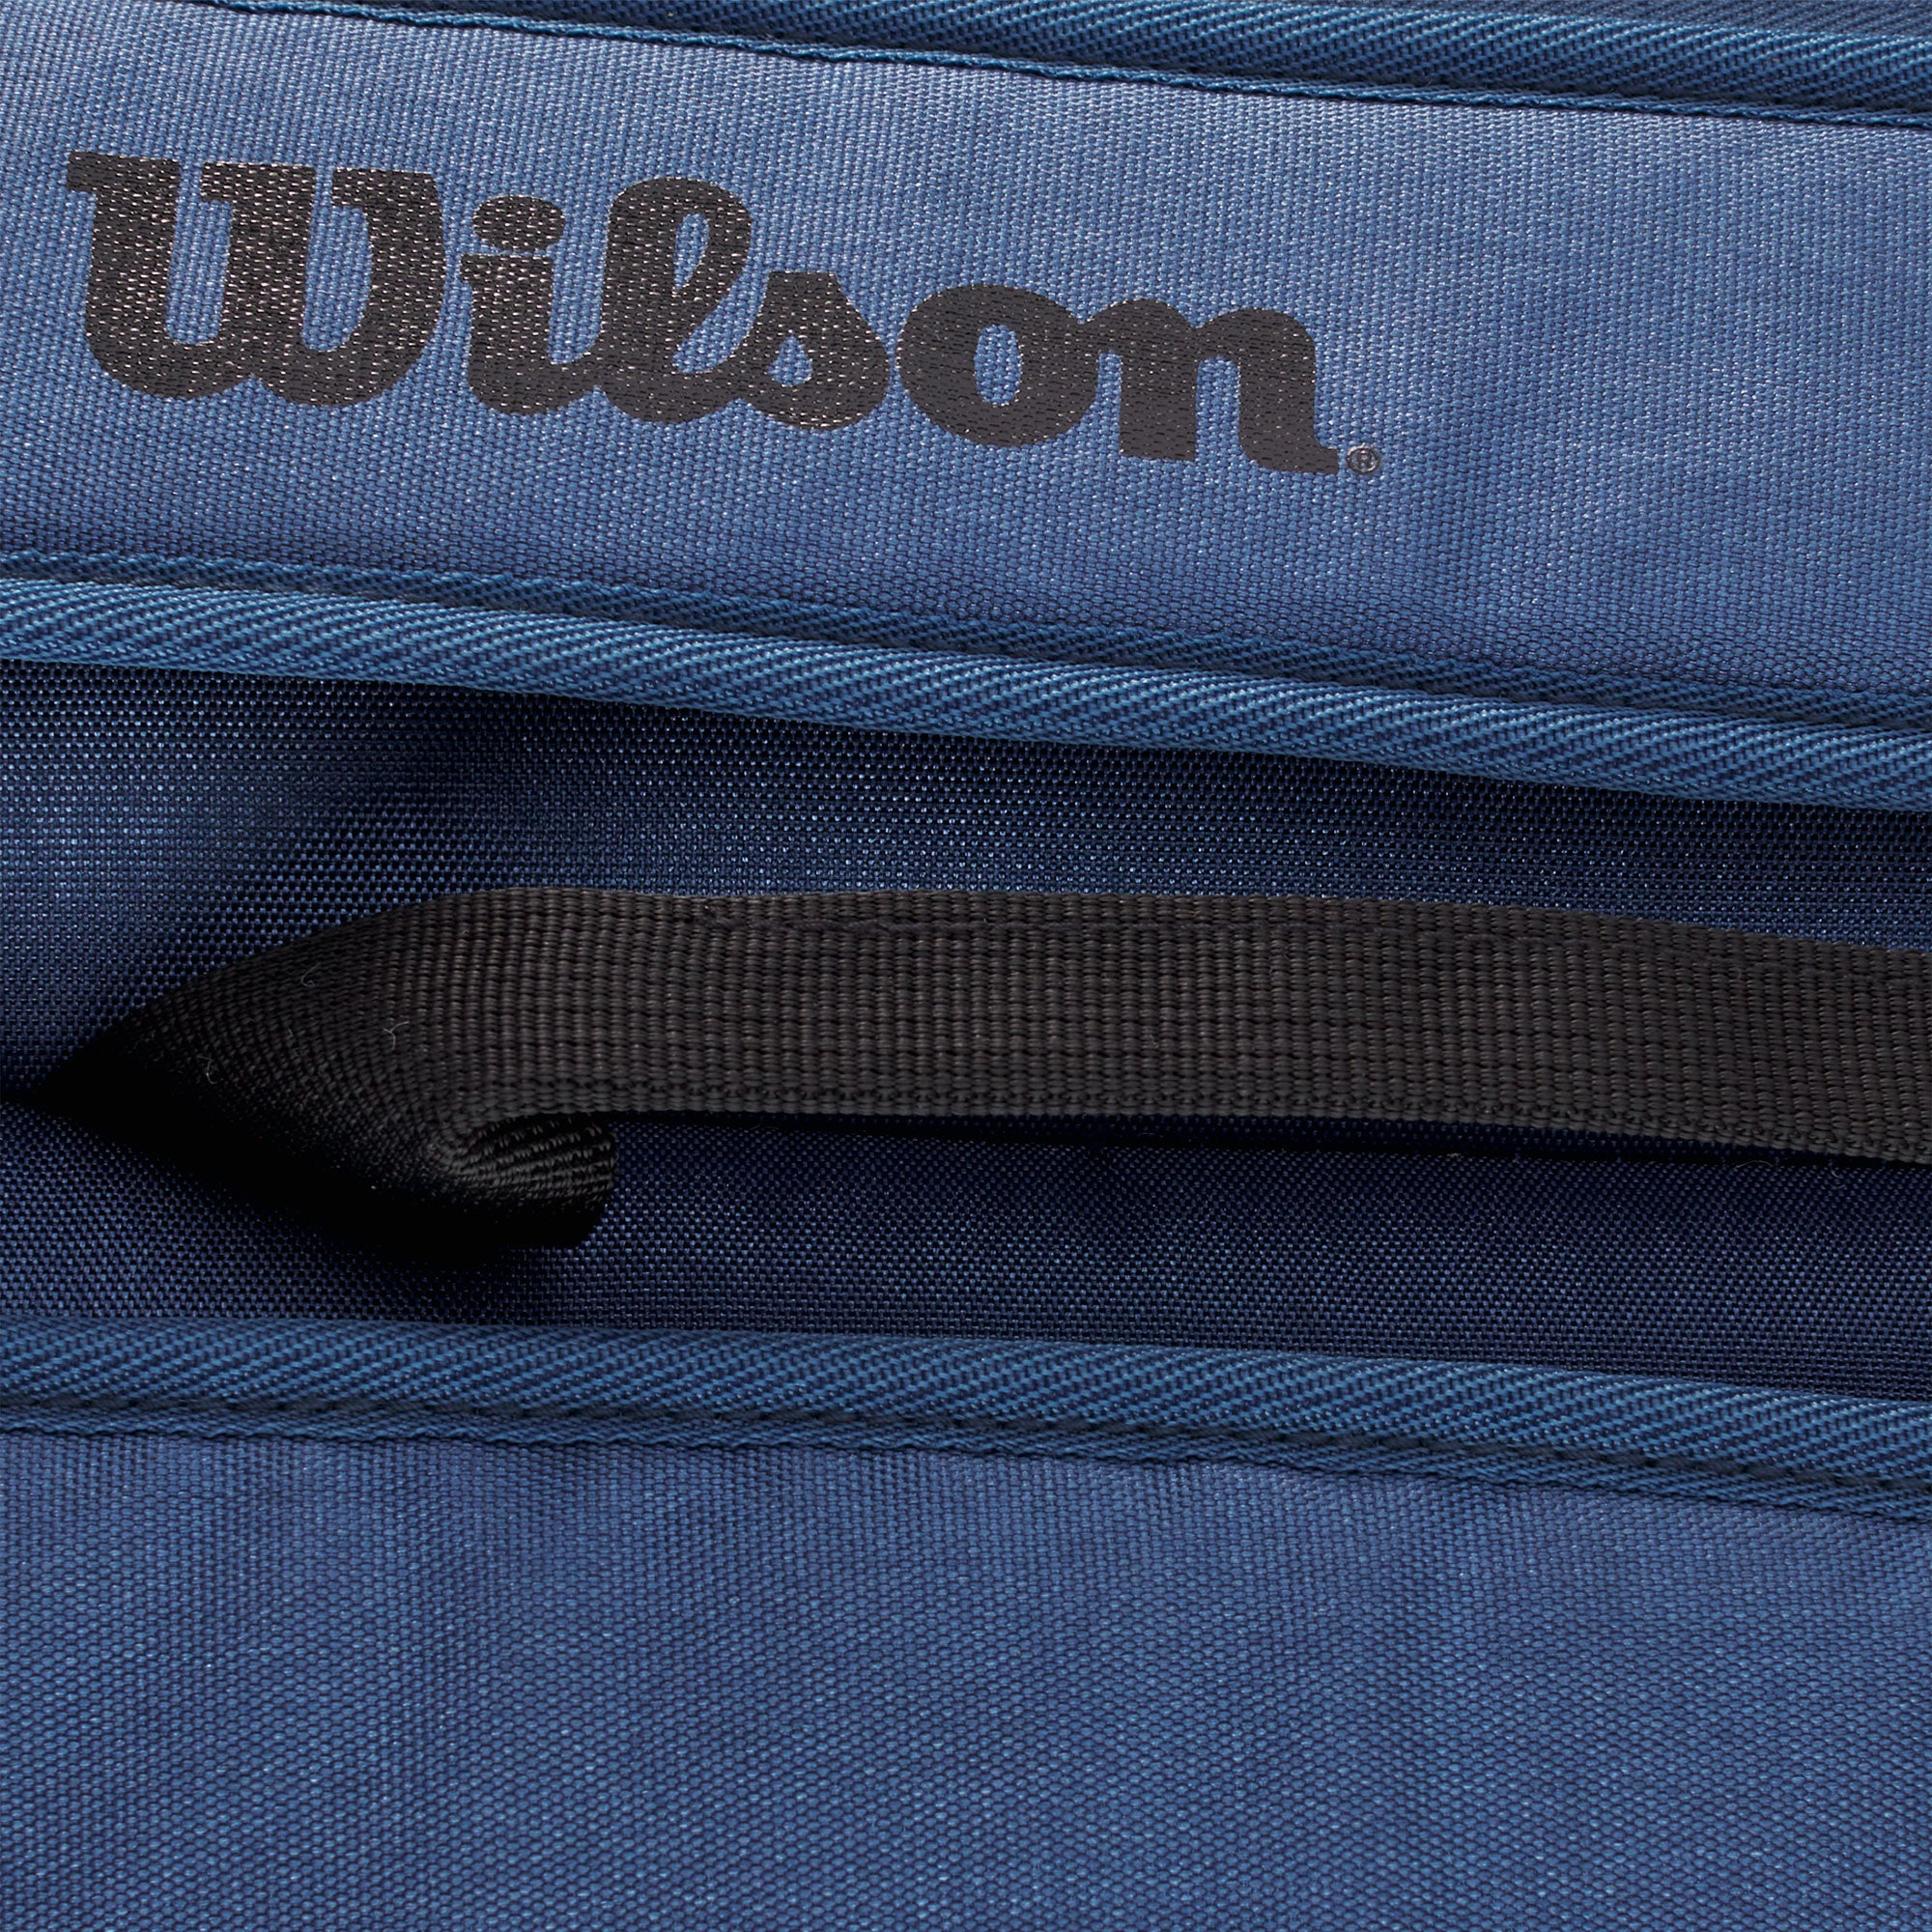 Wilson Tour Ultra 6 Pack Tennis Bag Blue (4)